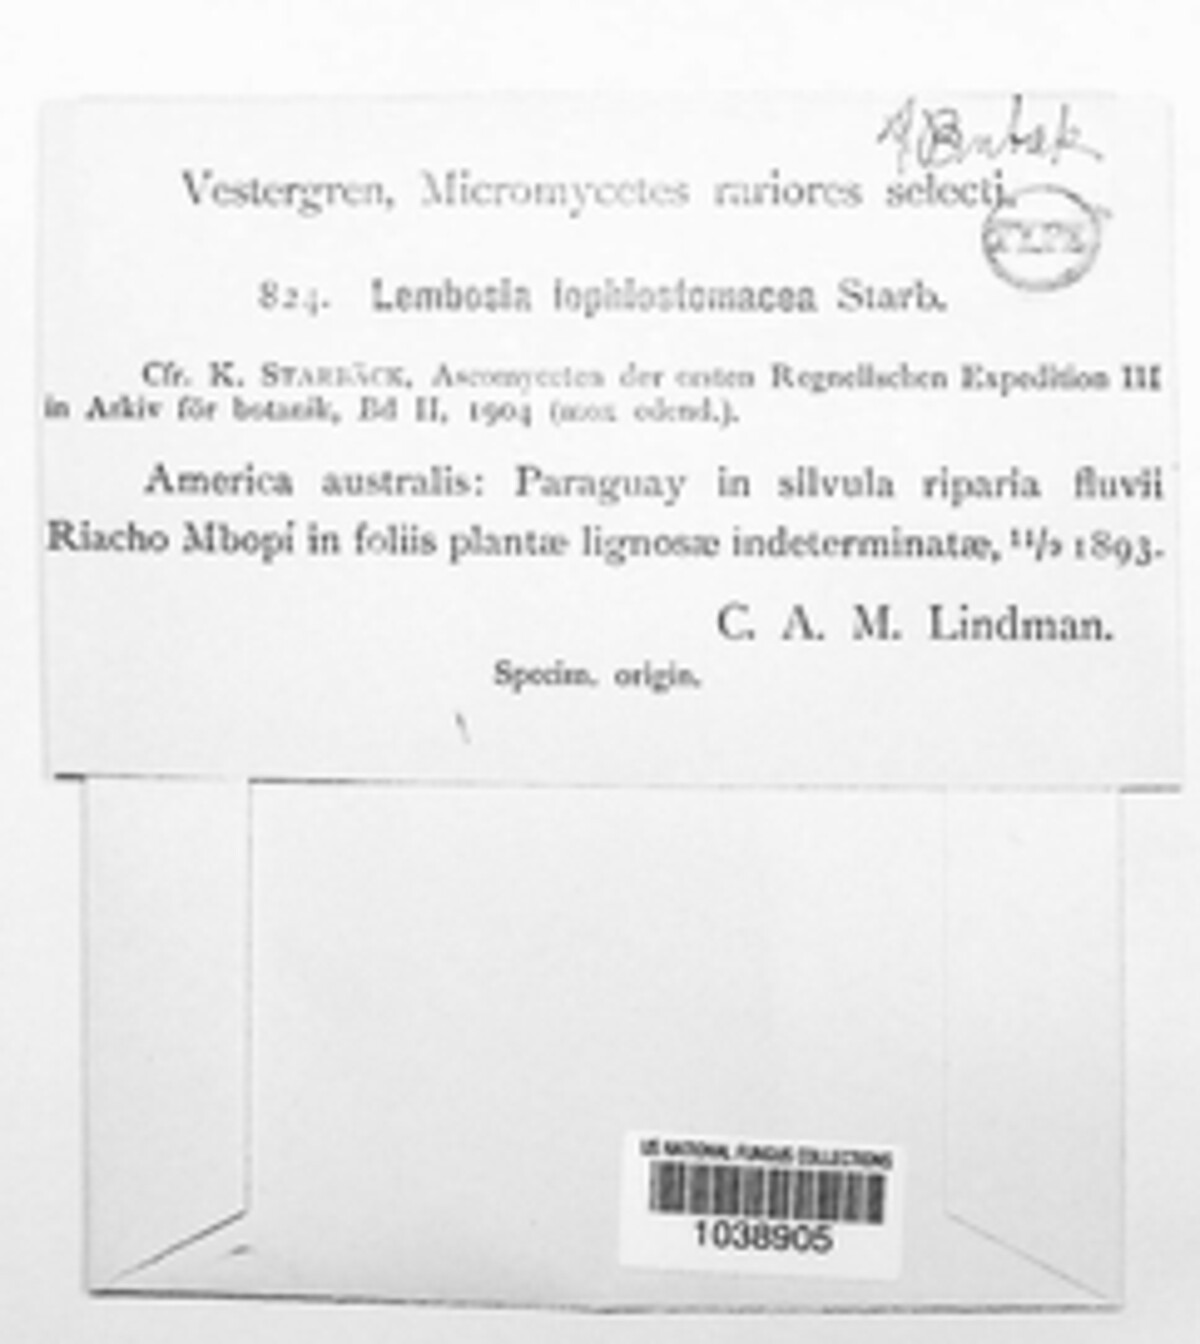 Lembosia lophiostomacea image